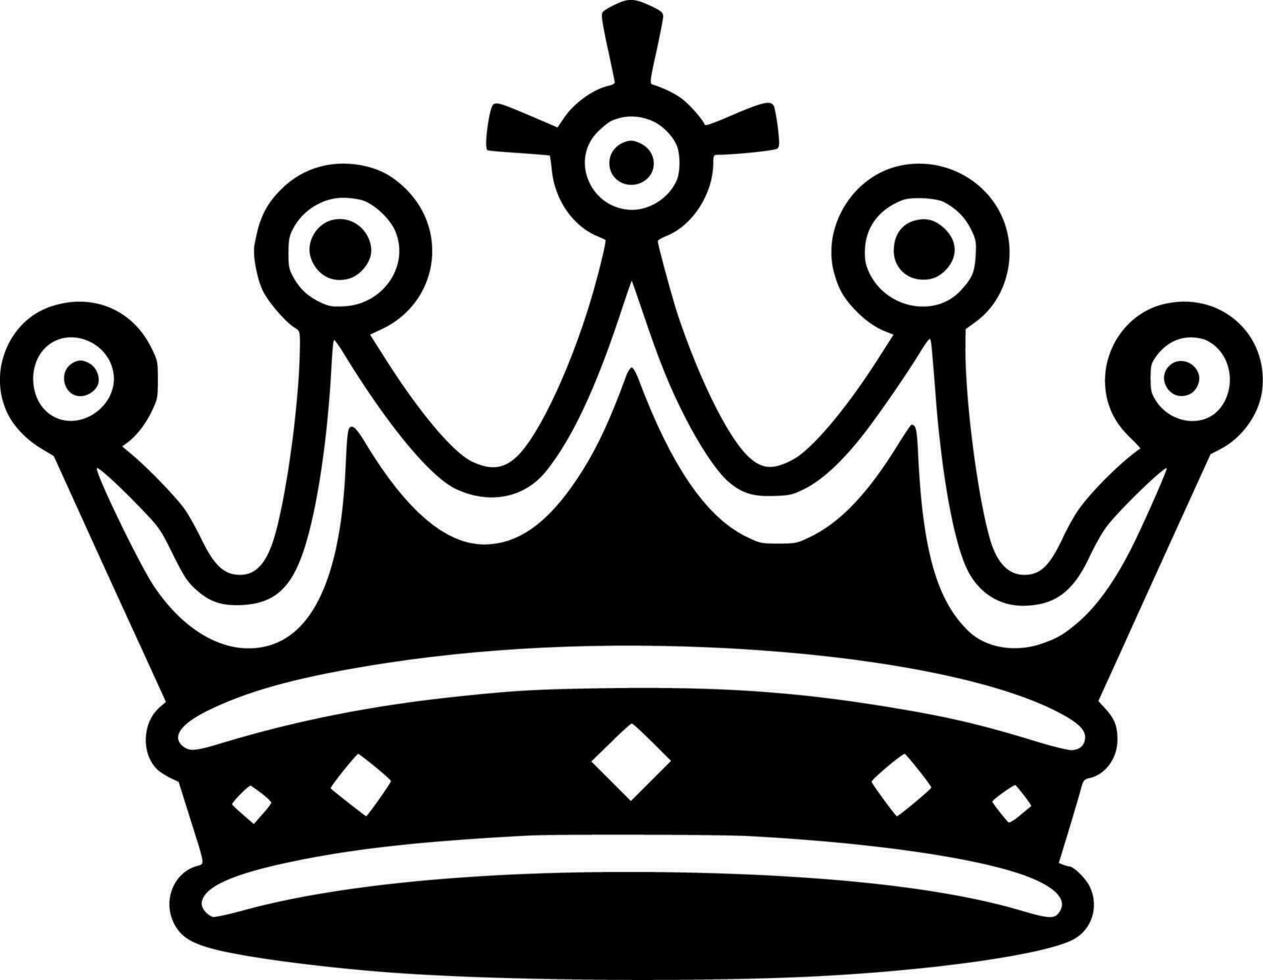 corona, nero e bianca vettore illustrazione